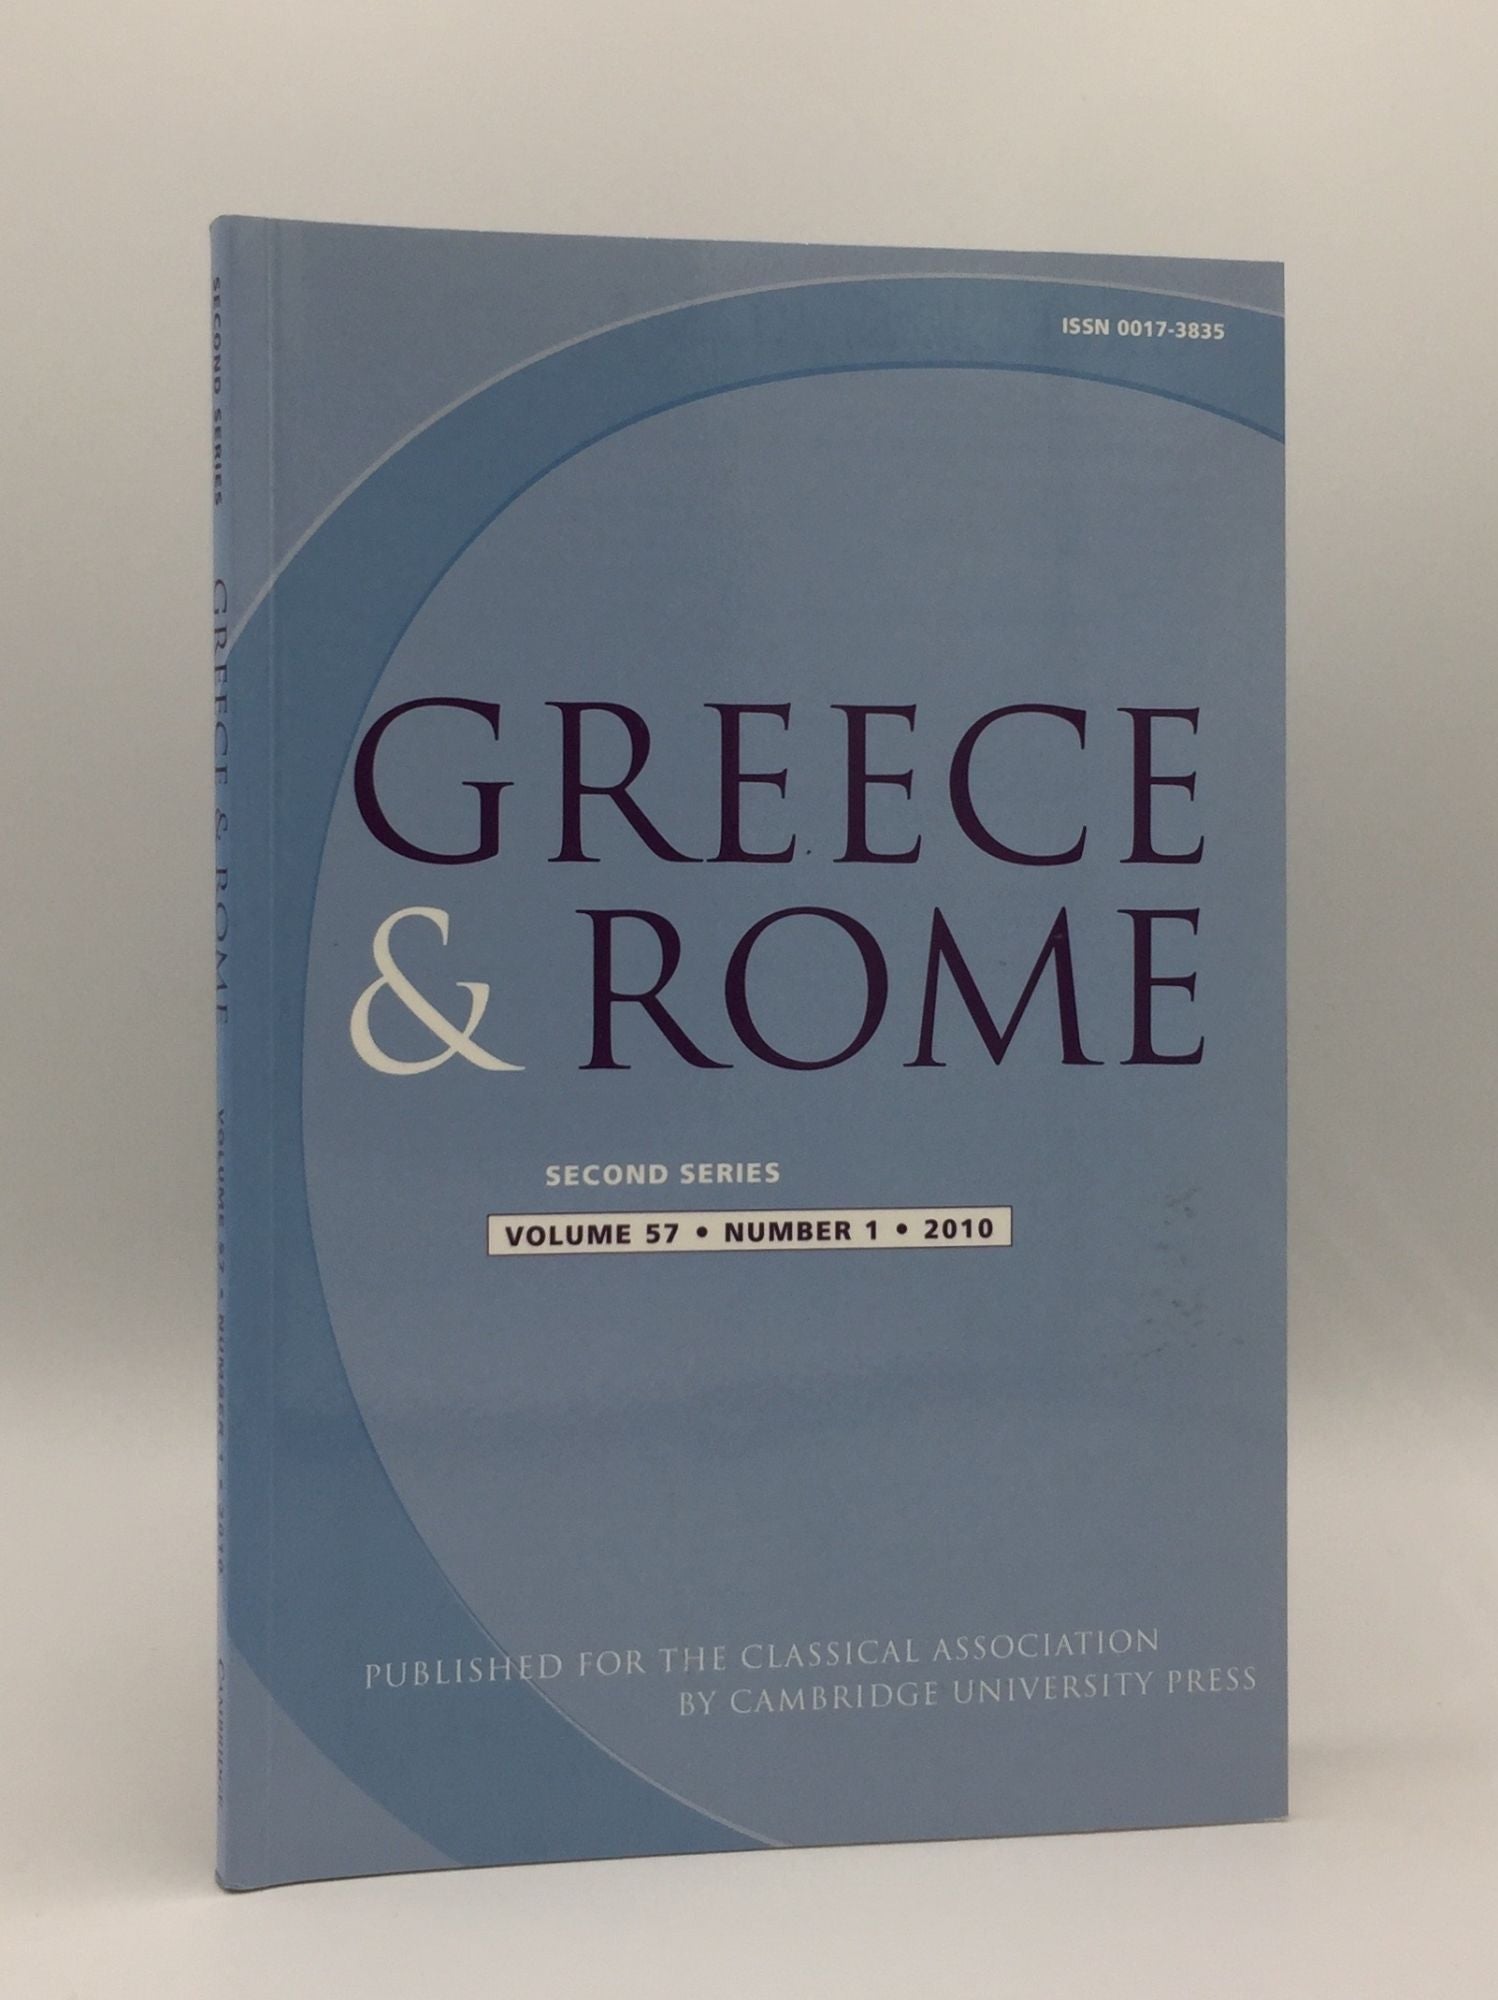 TAYLOR J., IZZET V., SHORROCK R. - Greece & Rome Second Series April 2010 Vol. 57 No. 1